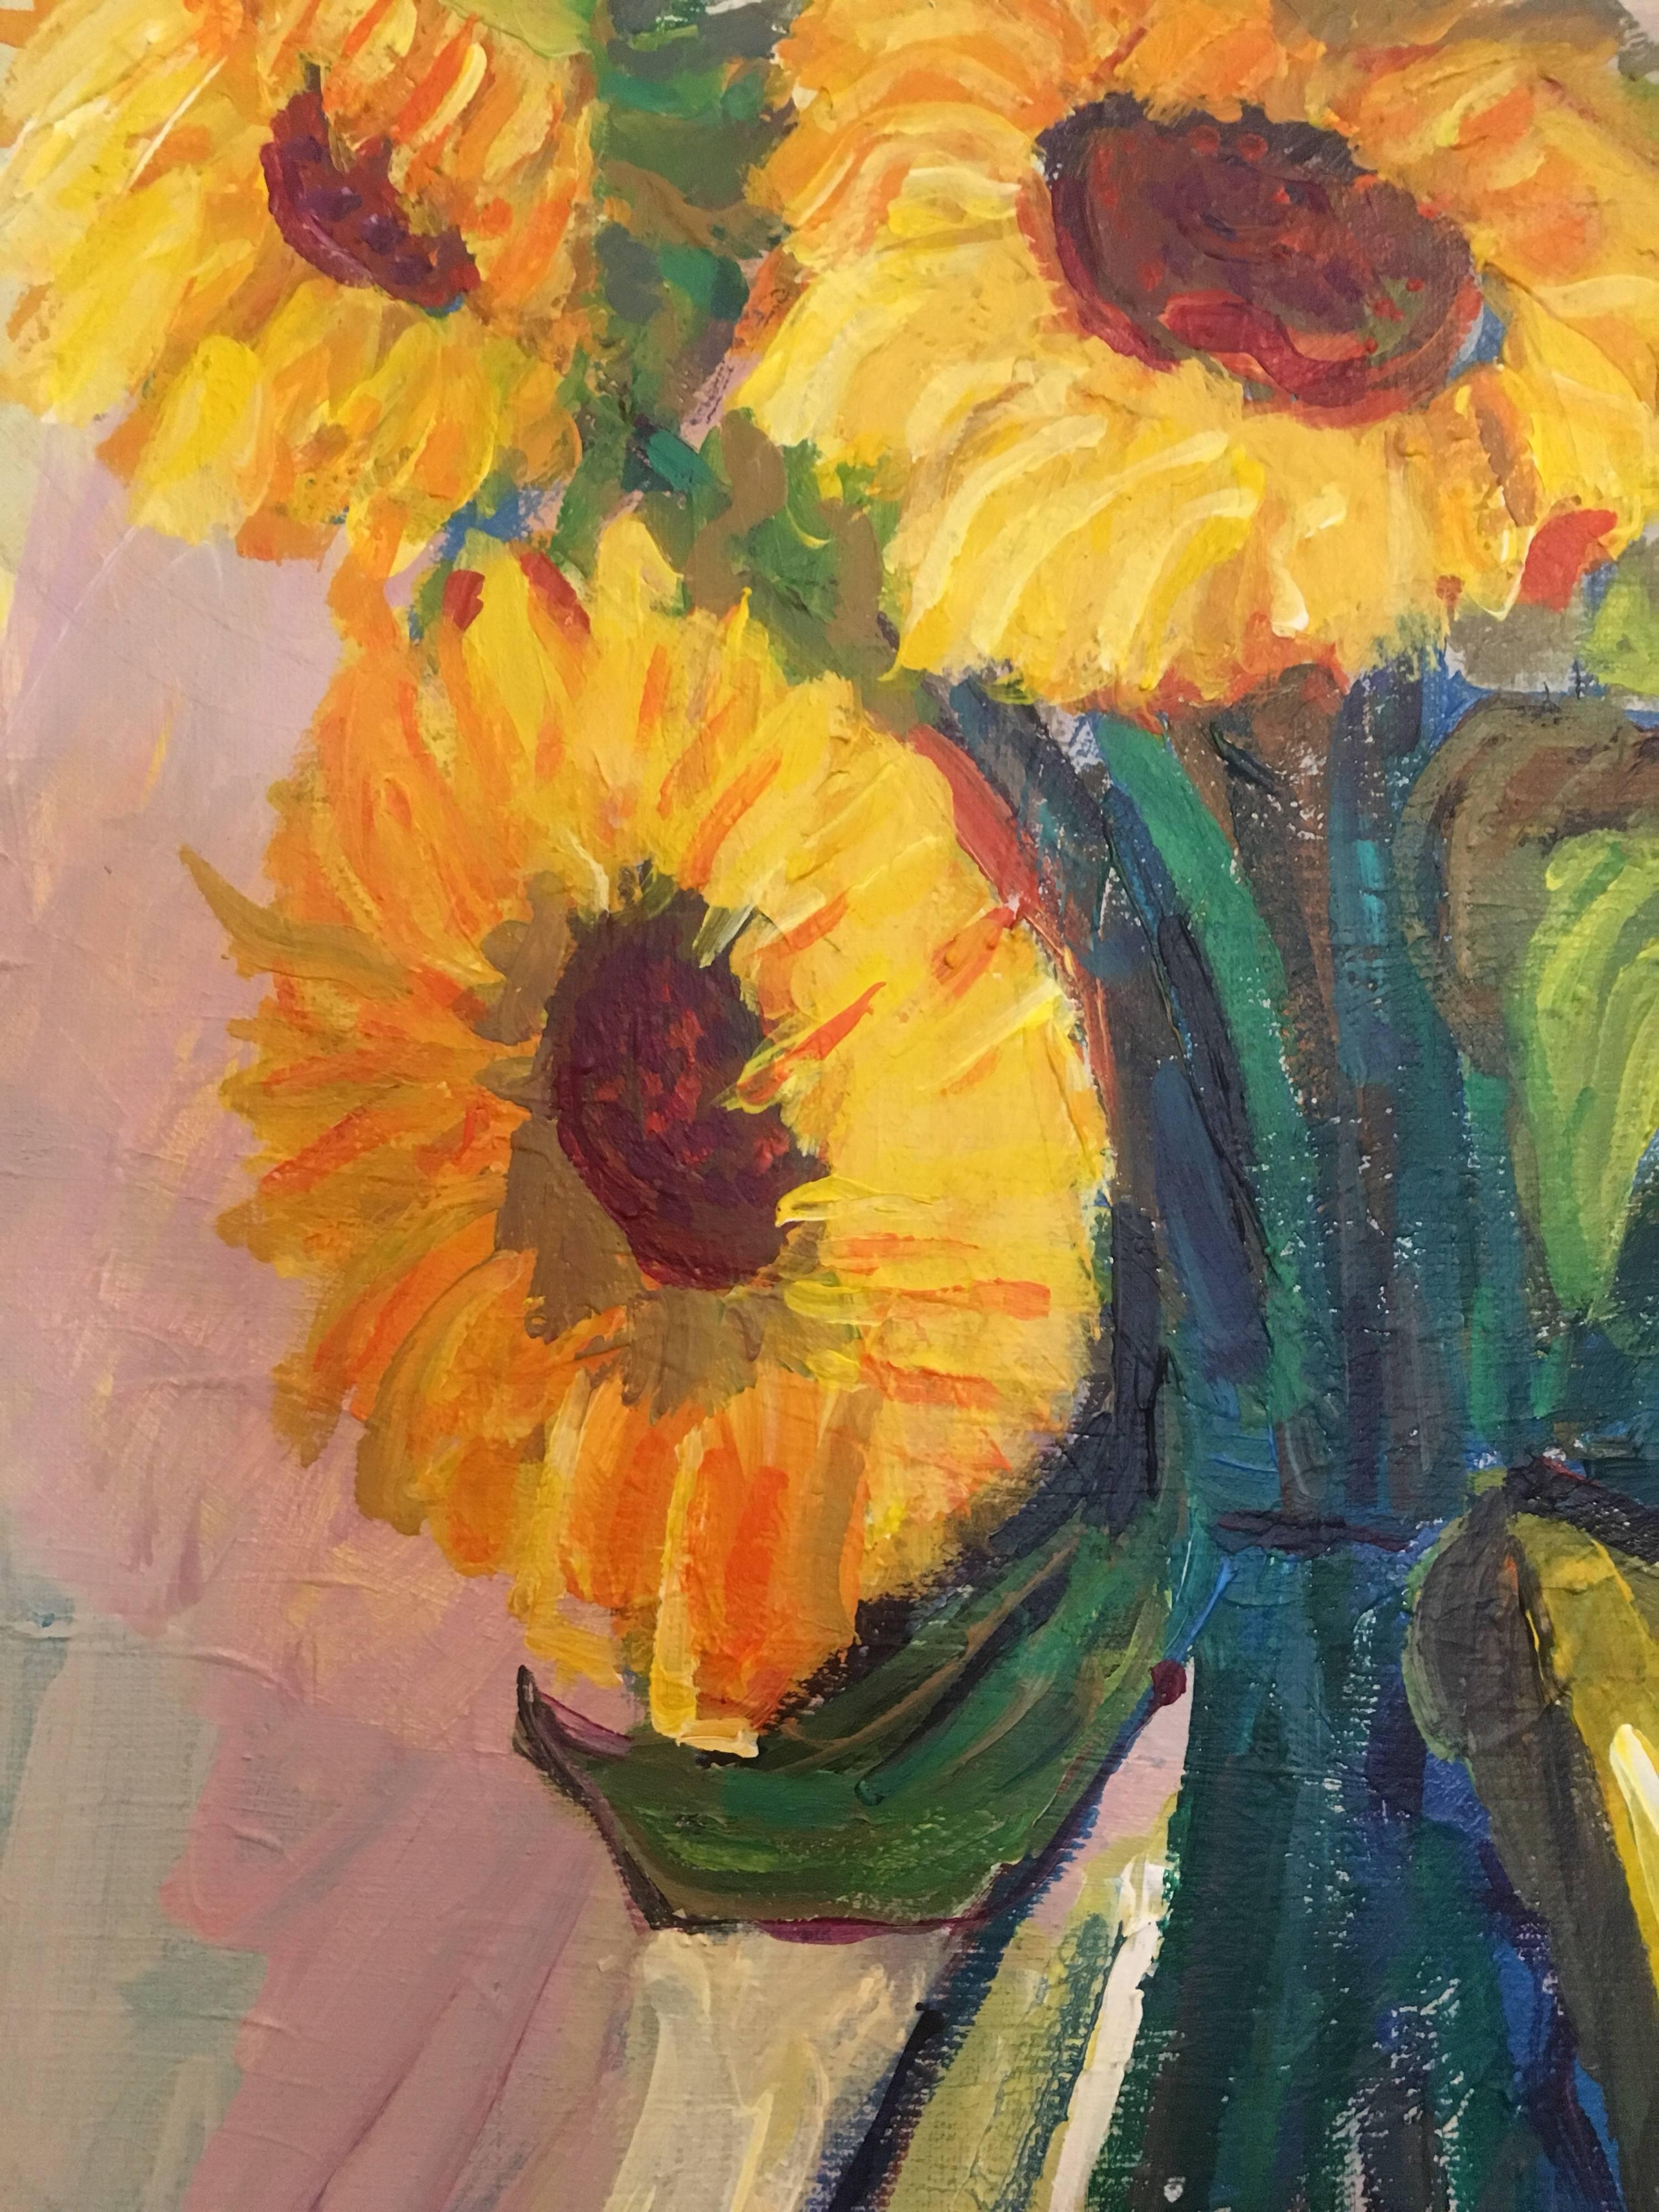 Sonnenblumen in einer Vase, Signiertes Ölgemälde
von Pamela Cawley, Britin, 20. Jahrhundert
ölgemälde auf Leinwand, ungerahmt

leinwand: 21,5 x 18 Zoll 

Beeindruckendes originales impressionistisches Ölgemälde der britischen Künstlerin Pamela